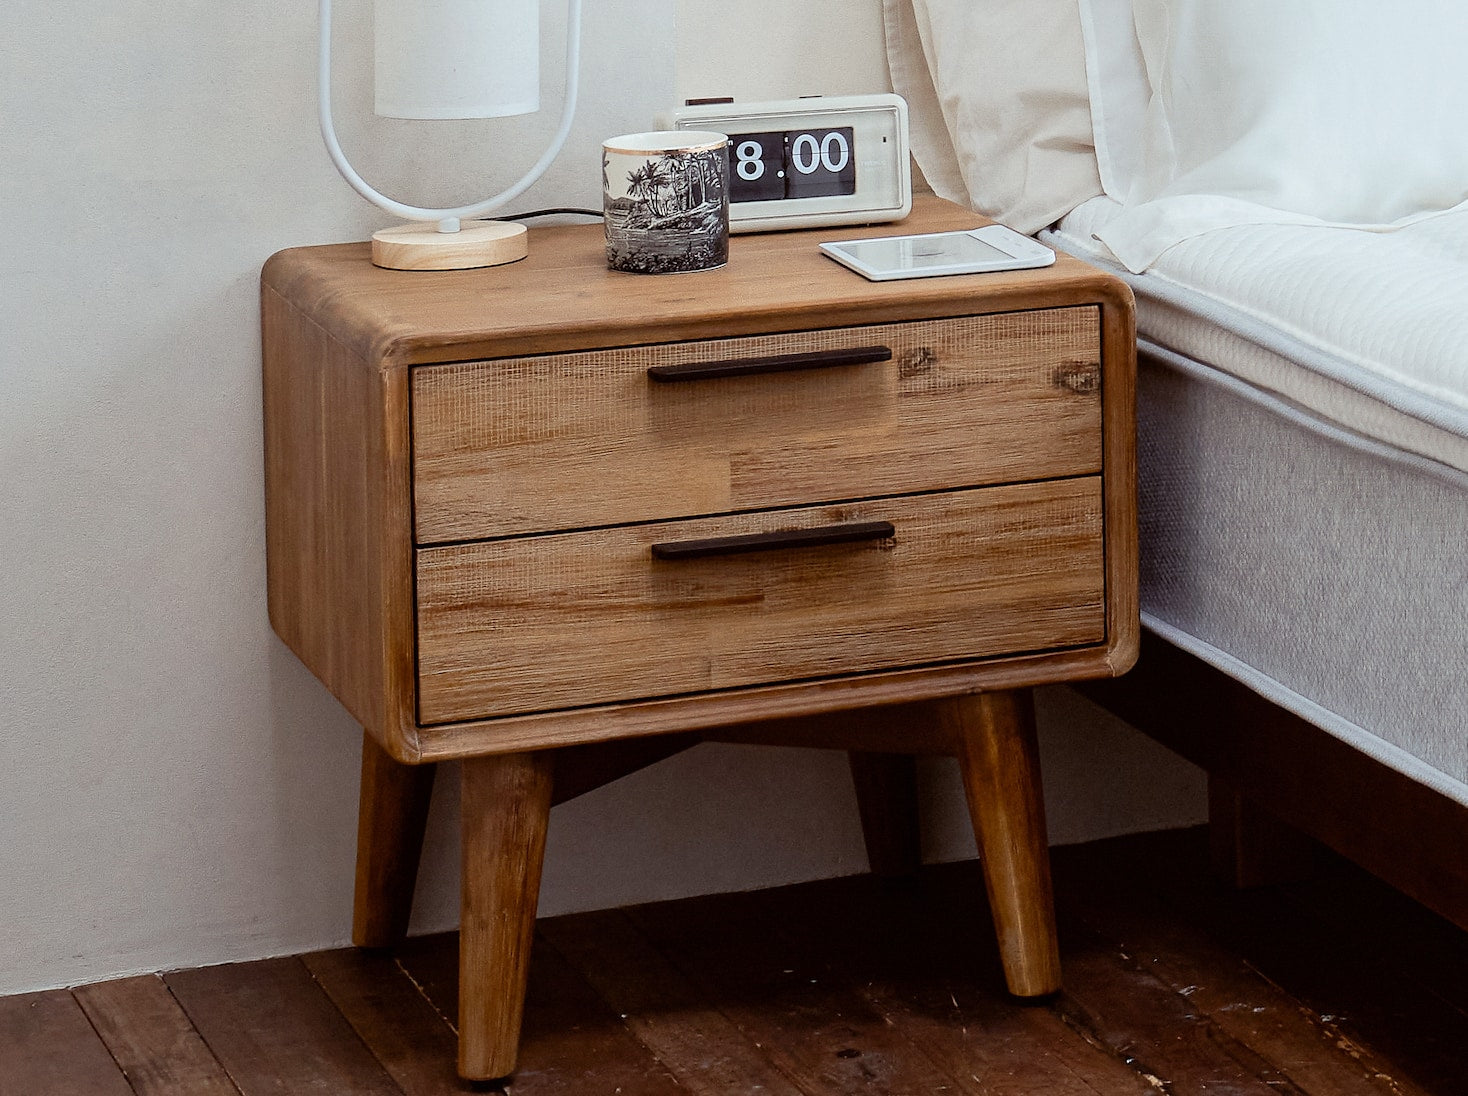 覺醒家居的木質床頭櫃放置在覺醒家居 Original 床墊旁，床頭櫃上方放了鬧鐘和小檯燈